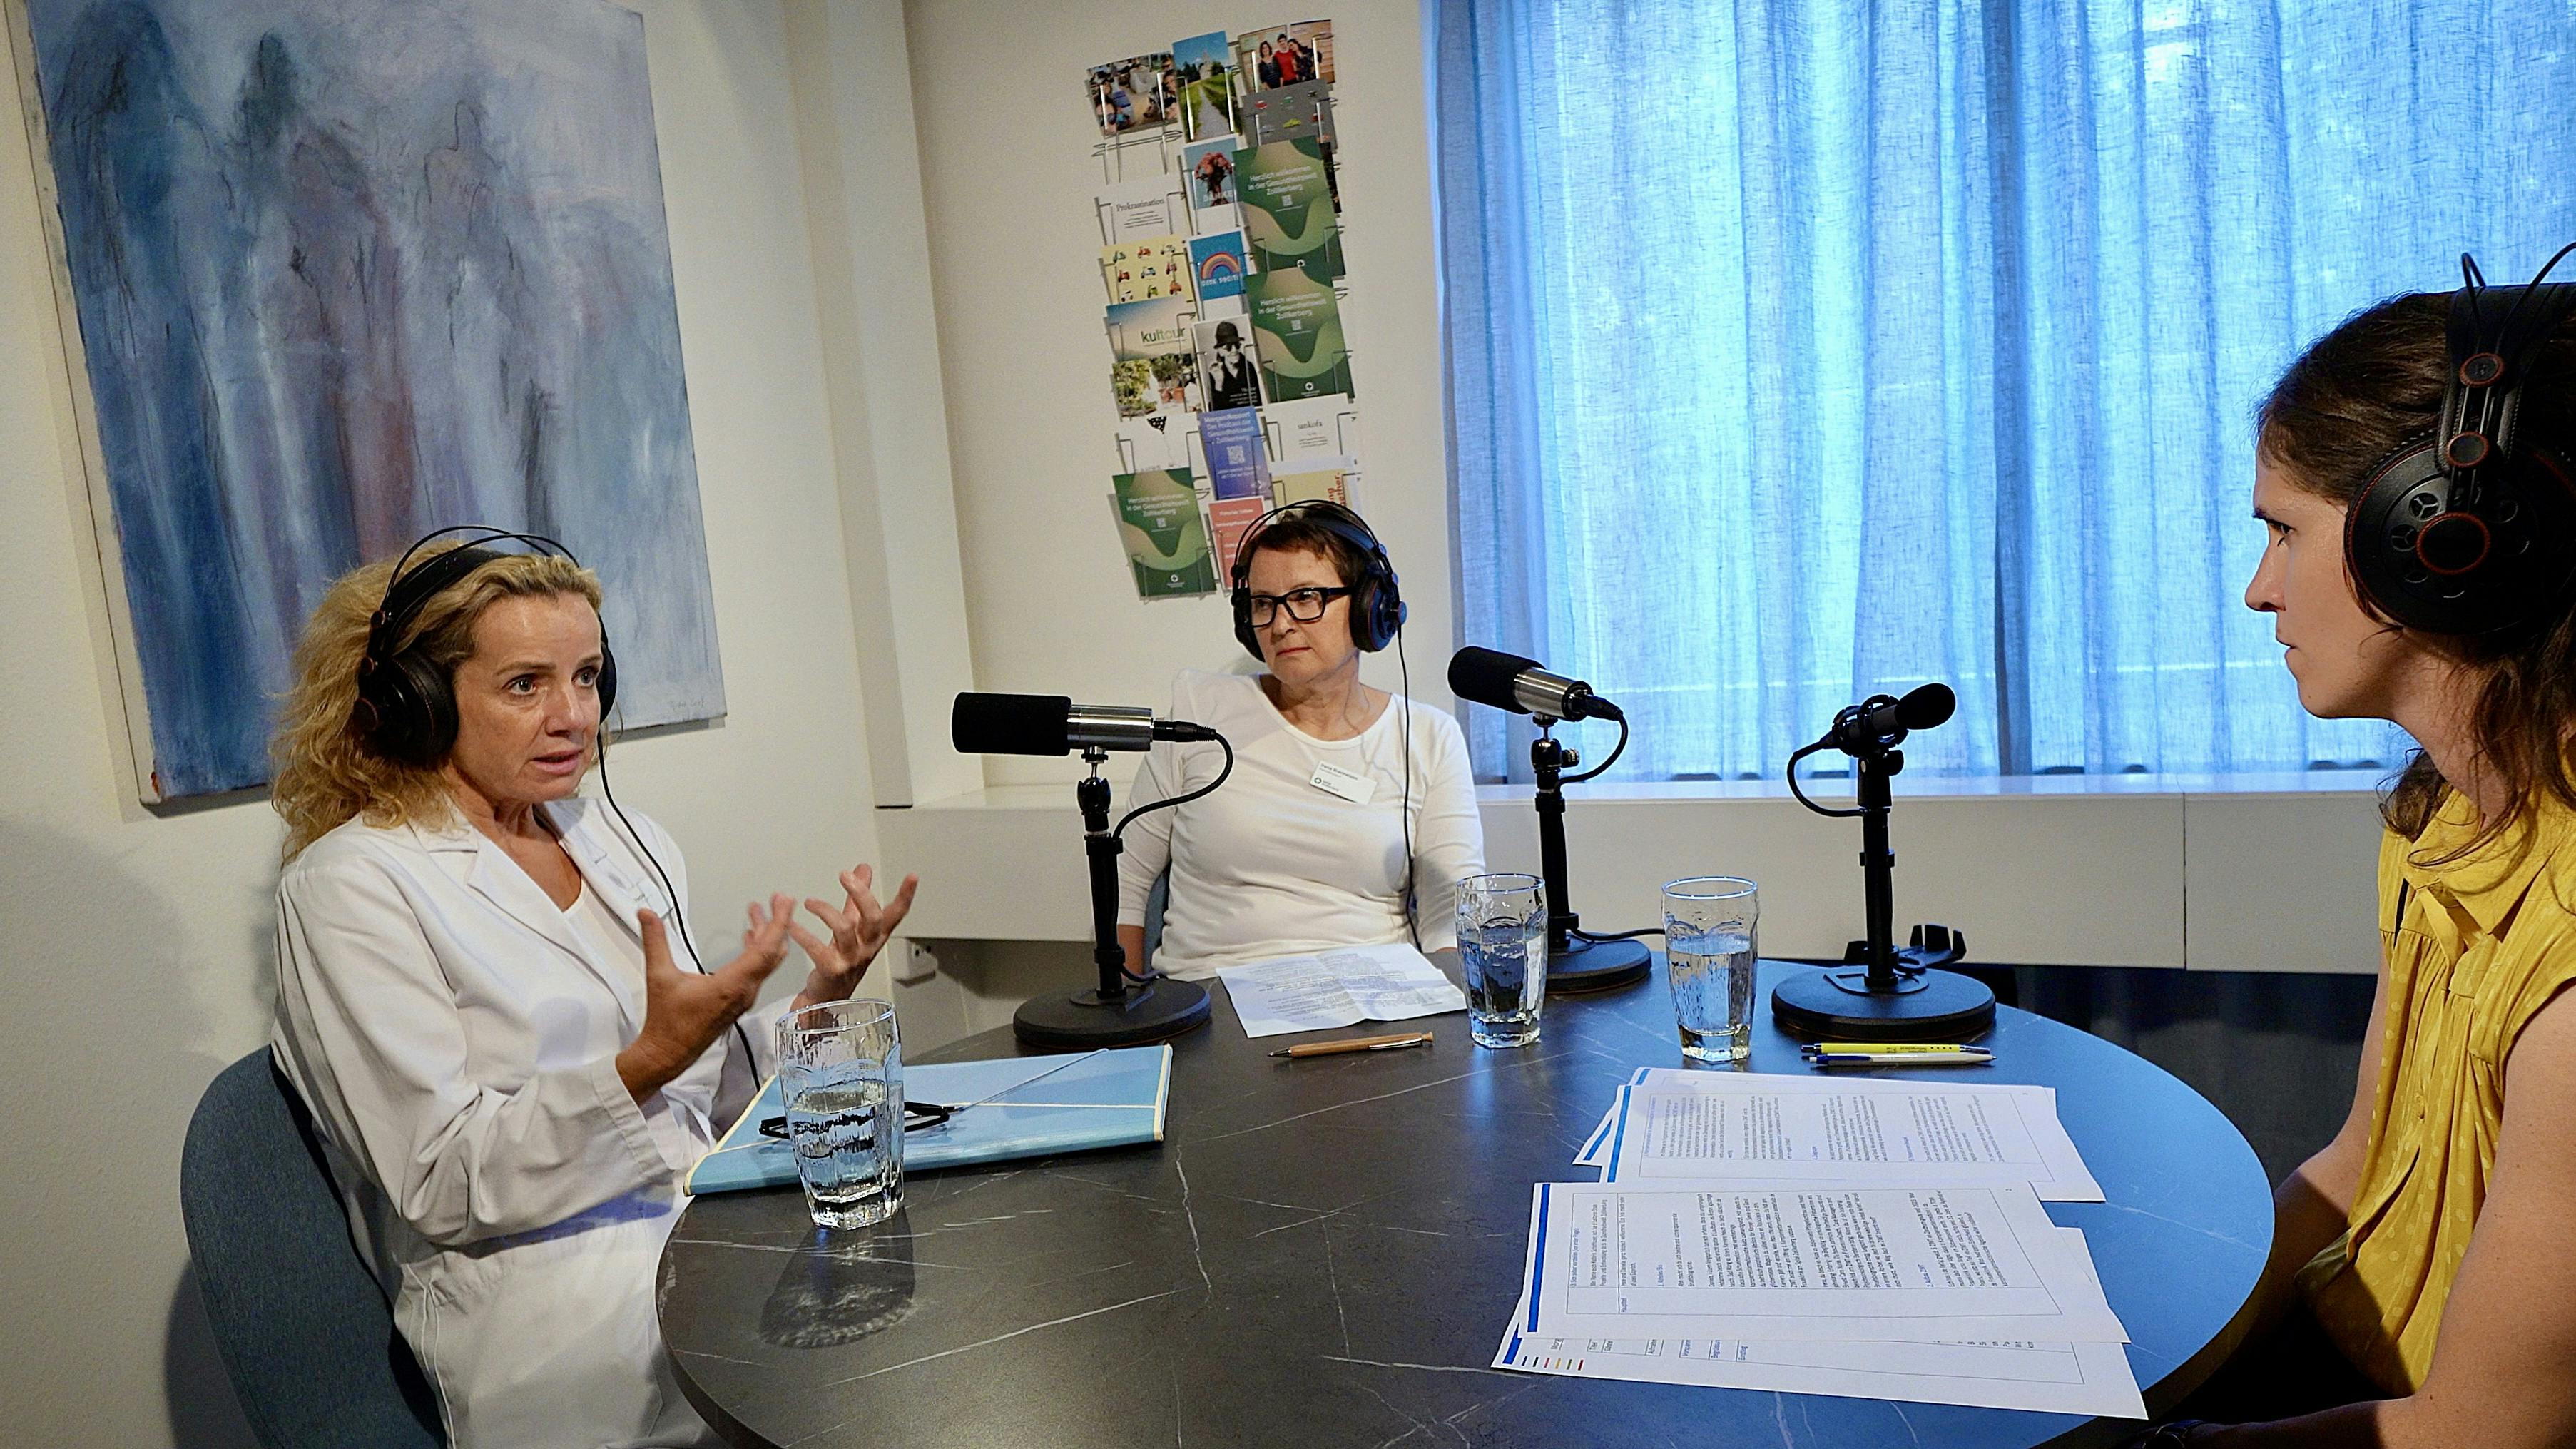 Zwei Personen bei einer Podcast-Aufnahme mit Mikrofonen und Unterlagen auf einem Tisch.